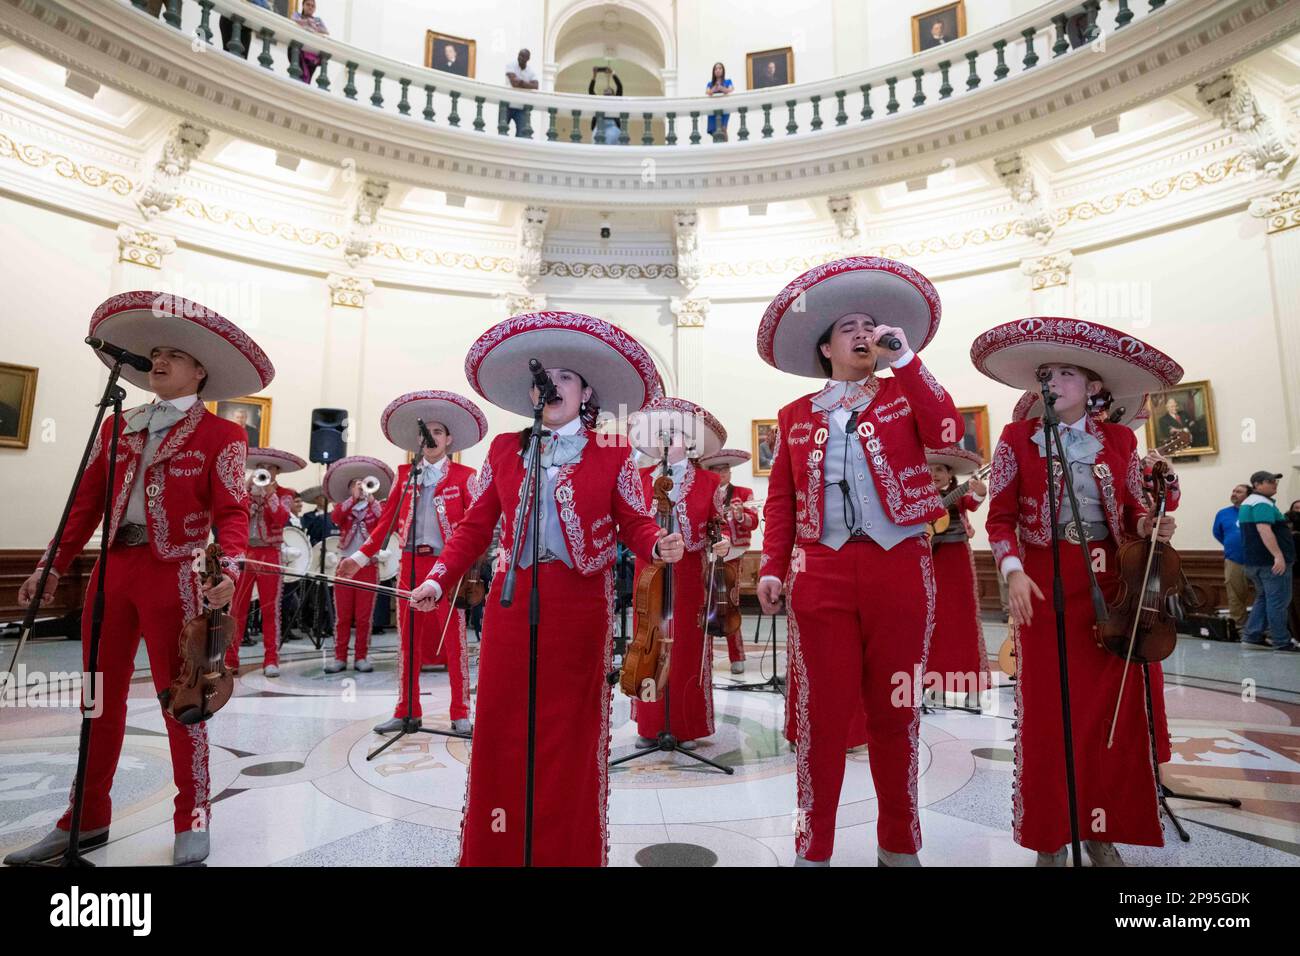 Ein High School-Mariachi aus Starr County, Texas, führt am 7. März 2023 ein nächtliches Konzert in der Texas Capitol Rotunda auf. Mariachi ist eine Art traditioneller mexikanischer Volksmusik, die in der Regel von einer kleinen Gruppe von Musikern in einheimischen Kostümen gespielt wird und bei Wettbewerben in Schulen im Süden von Texas beliebt ist. Stockfoto